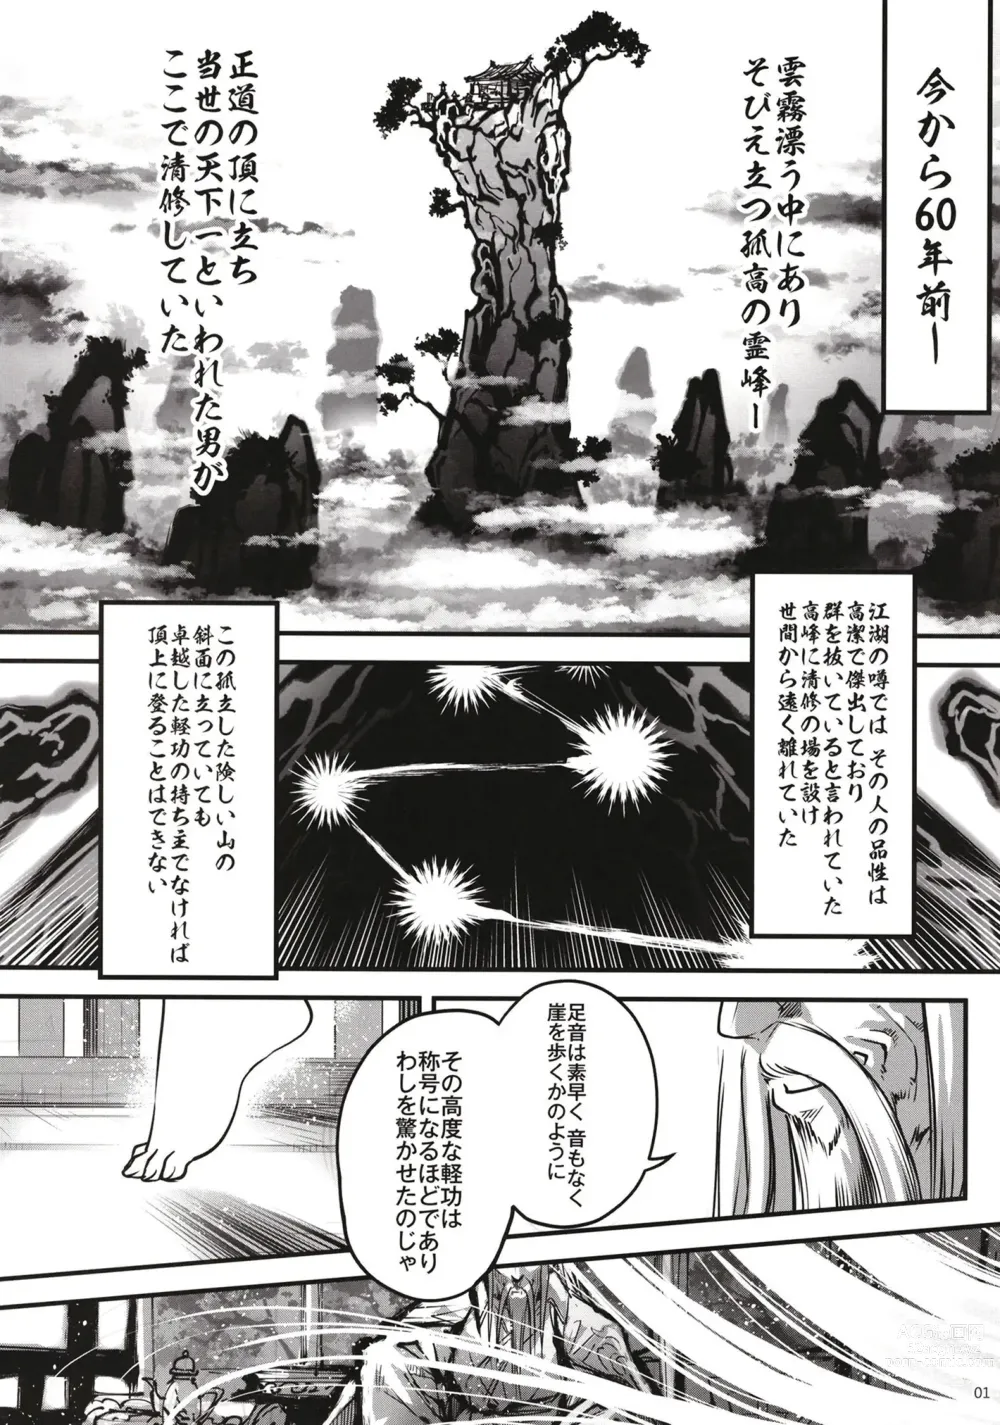 Page 2 of doujinshi Hyakkasou 11 Idatsu Ijitsu Gaiden